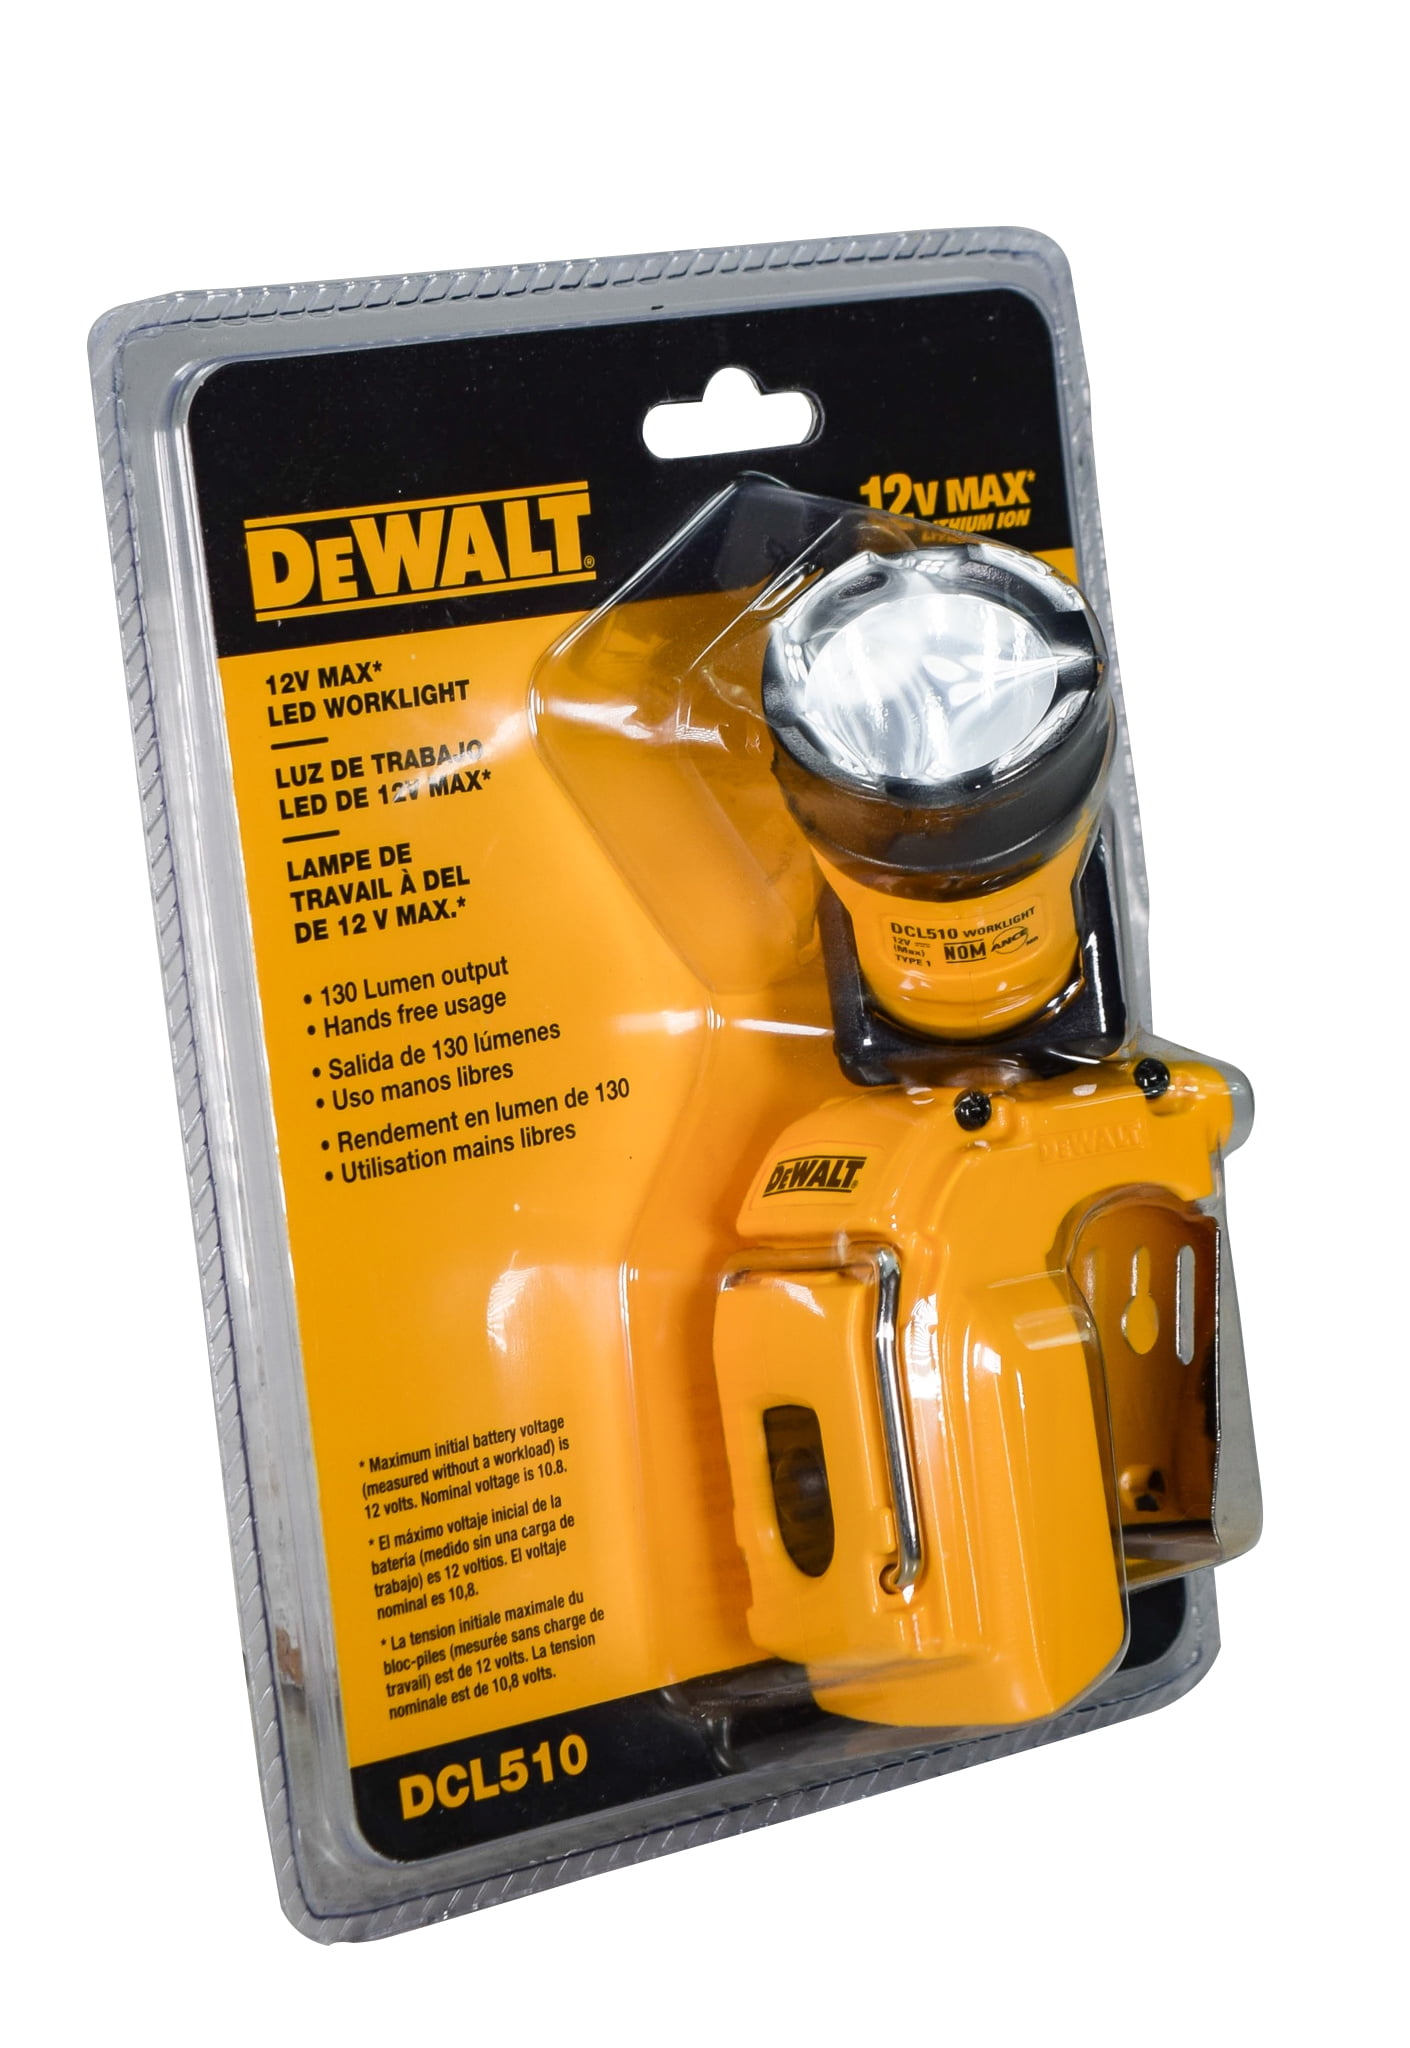 Dewalt DCL510 12V Lithium Ion MAX LED Worklight-***NEW*** 